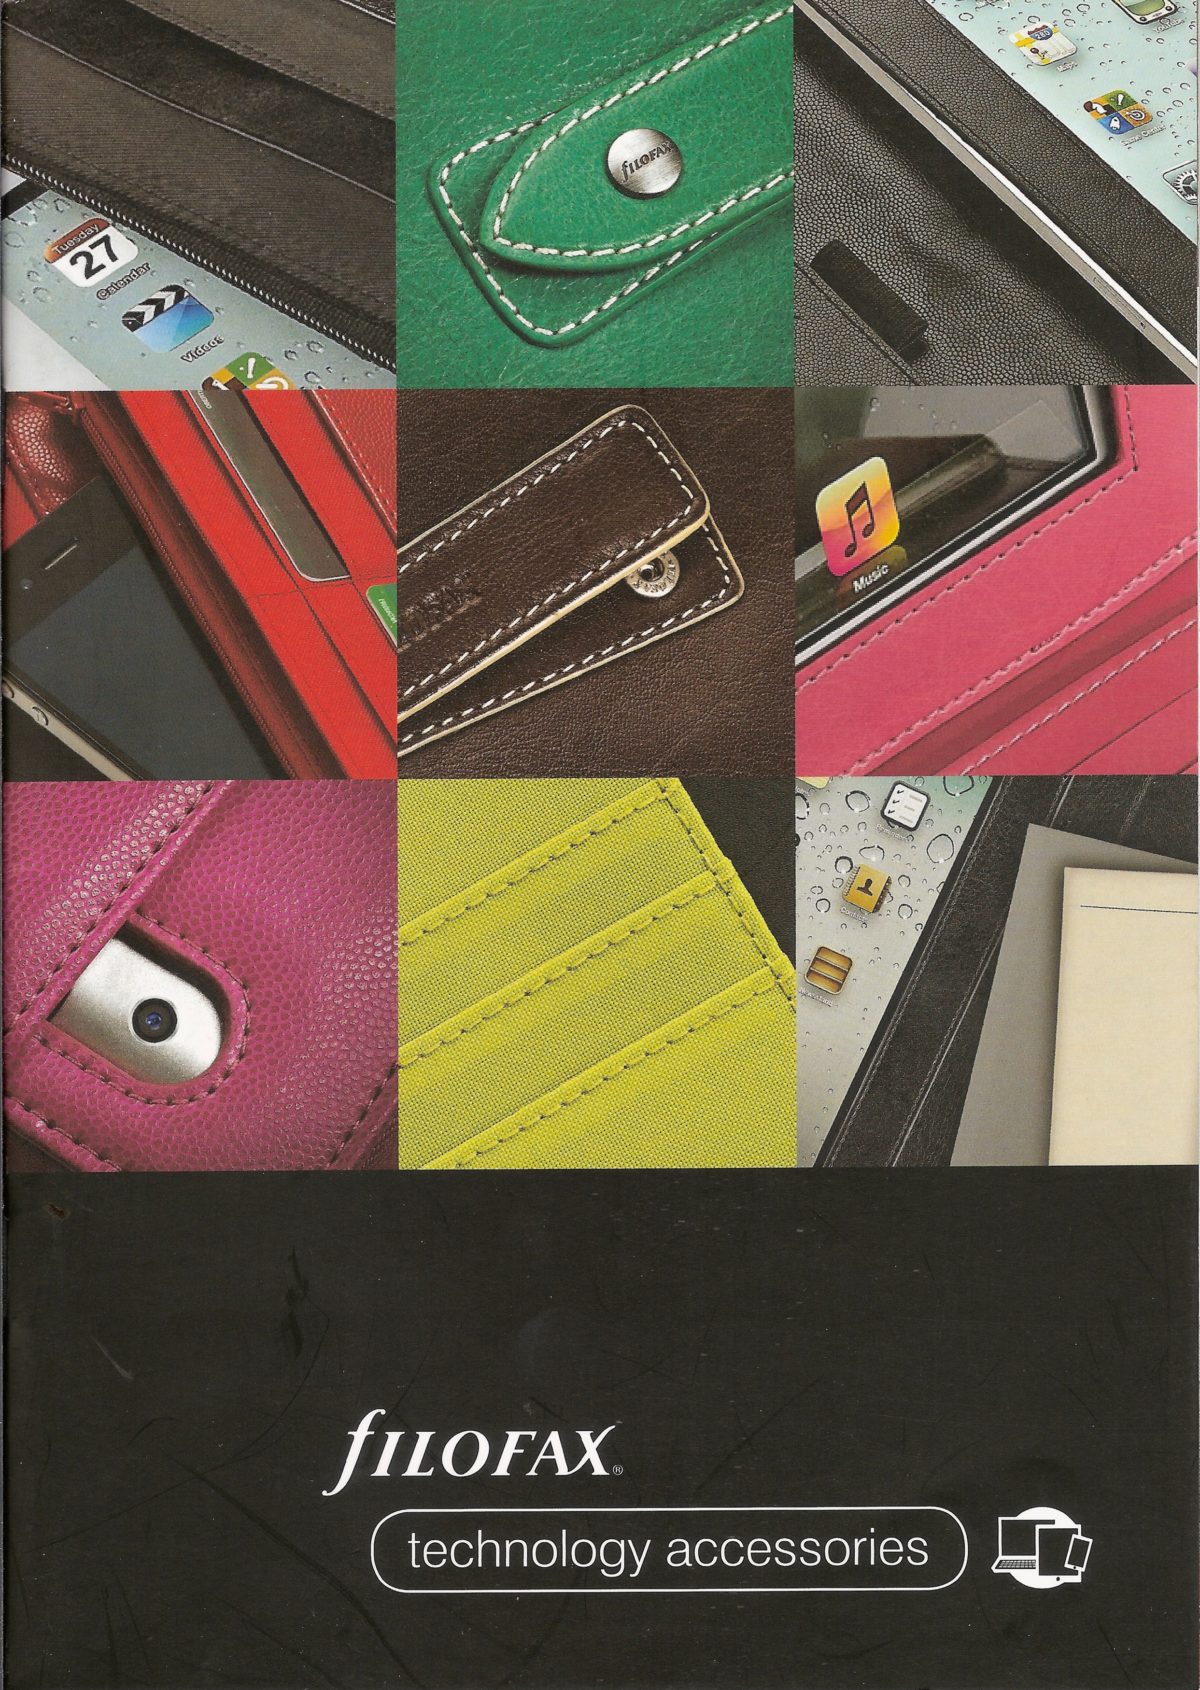 Filofax UK Technology accessories 2013/14